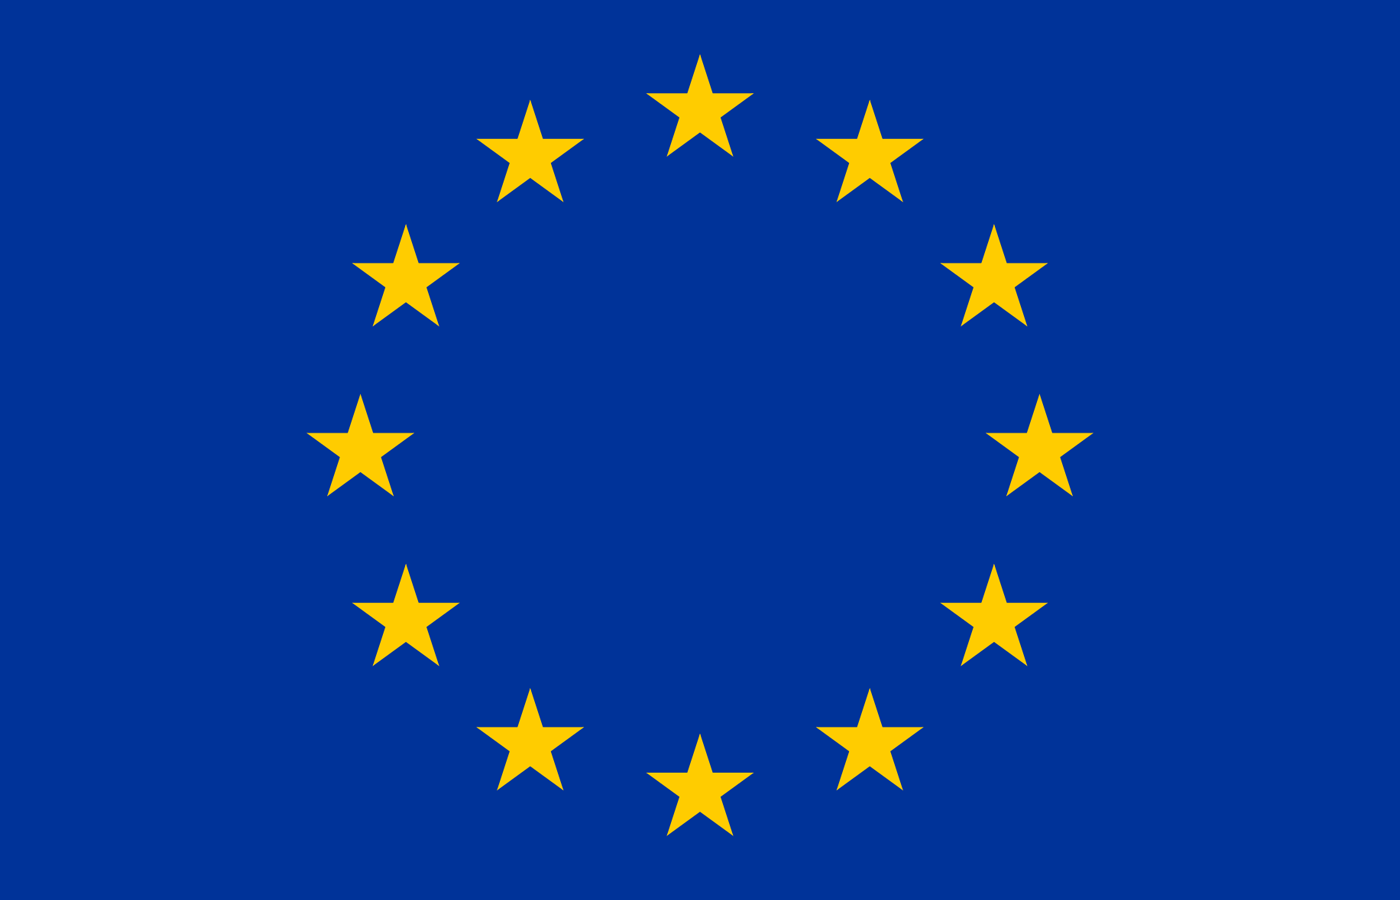 StarCitizenEuropeanUnion